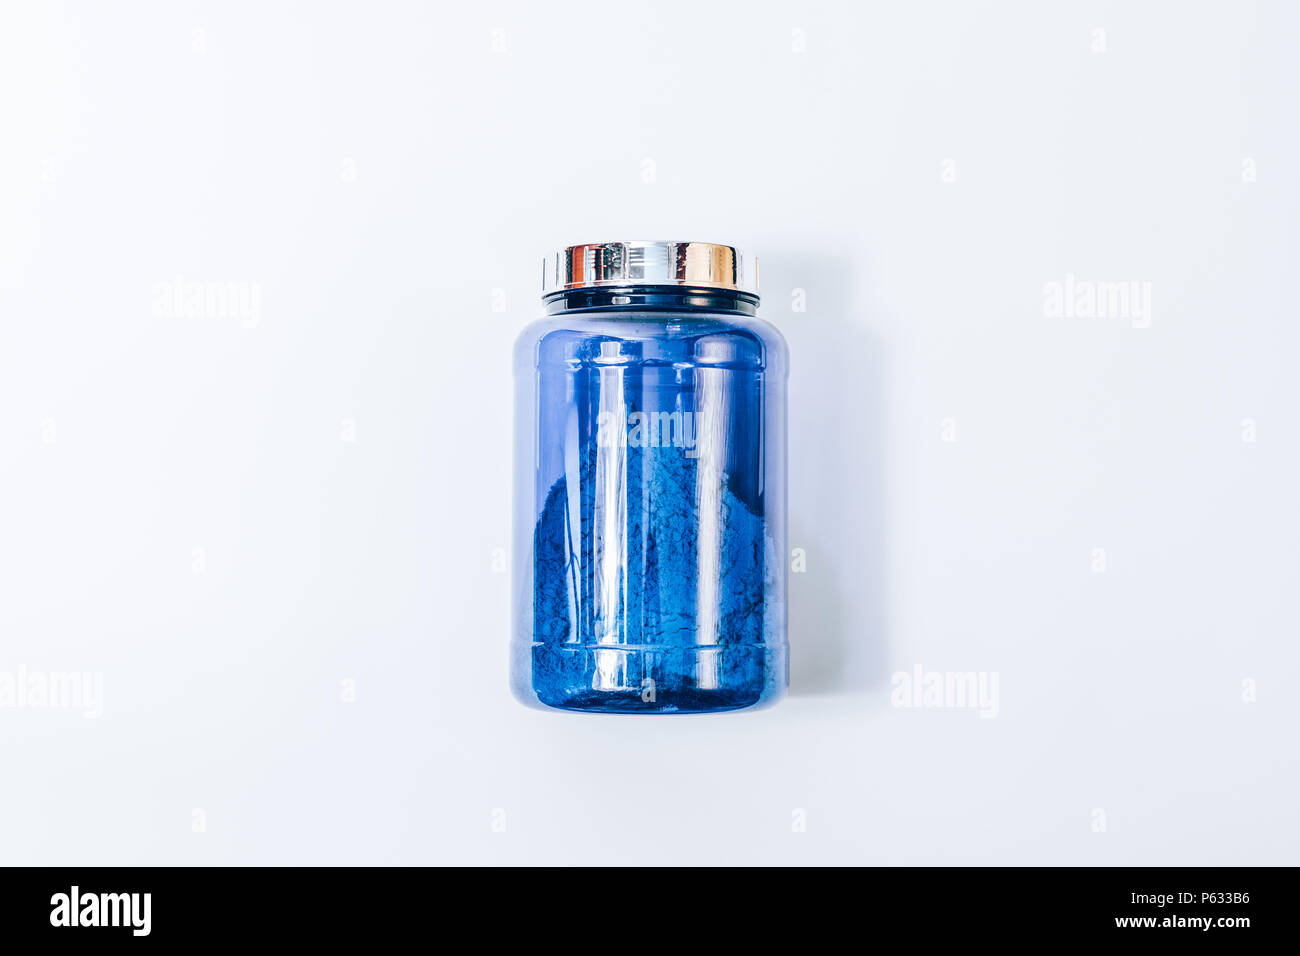 Big Blue jar di proteine in polvere, piatto laici. Immagine minima della banca di nutrizione sportiva supplementi, vista dall'alto su un solido bianco sullo sfondo. Foto Stock